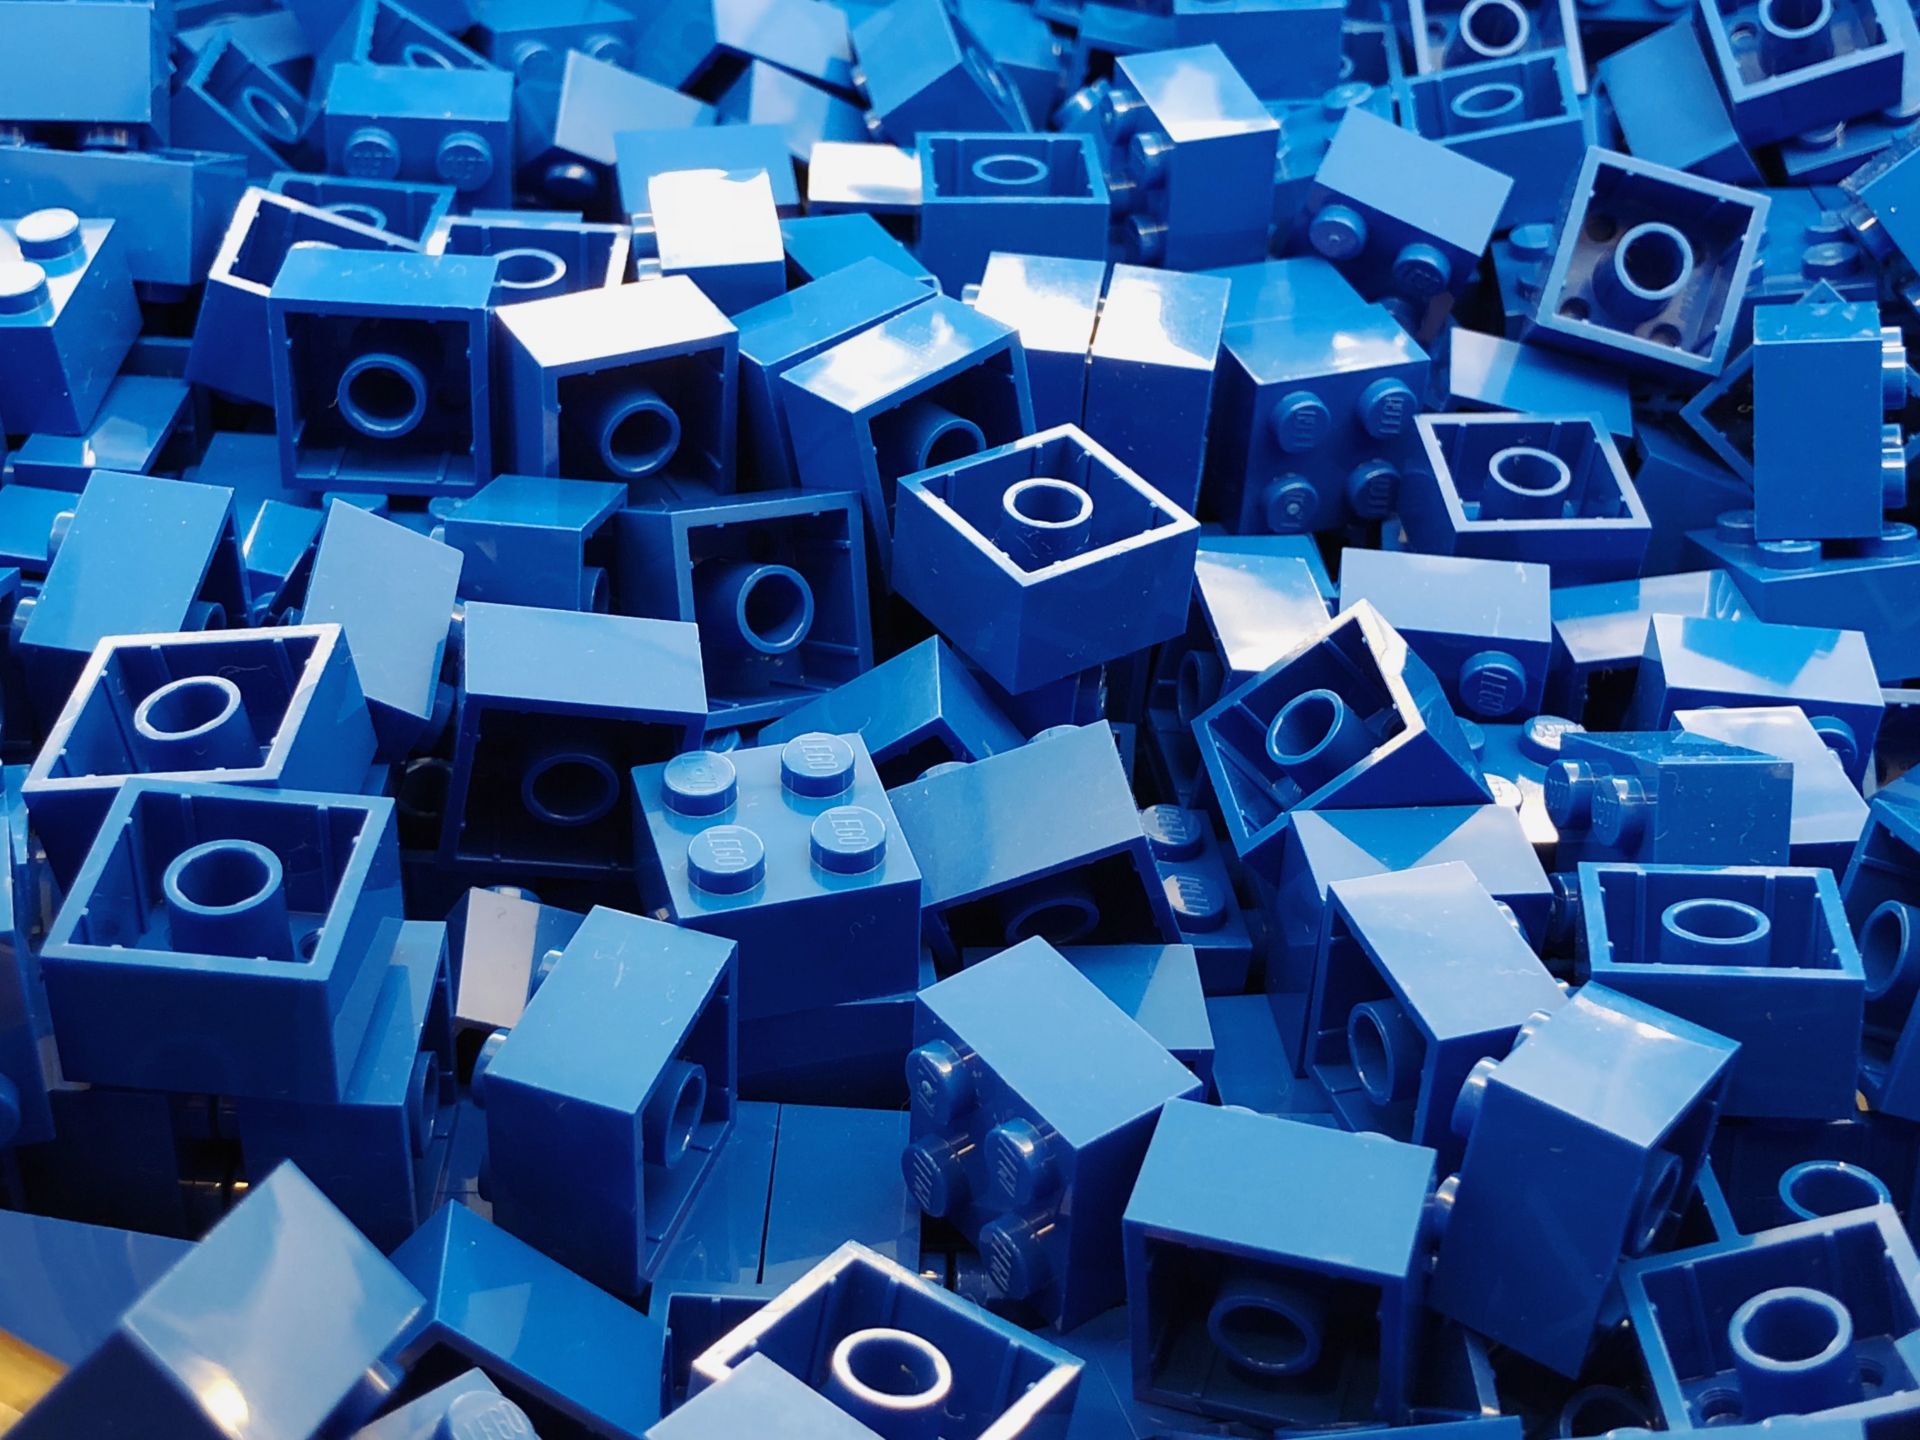 Sinisiä Lego-palikoita, valokuva.